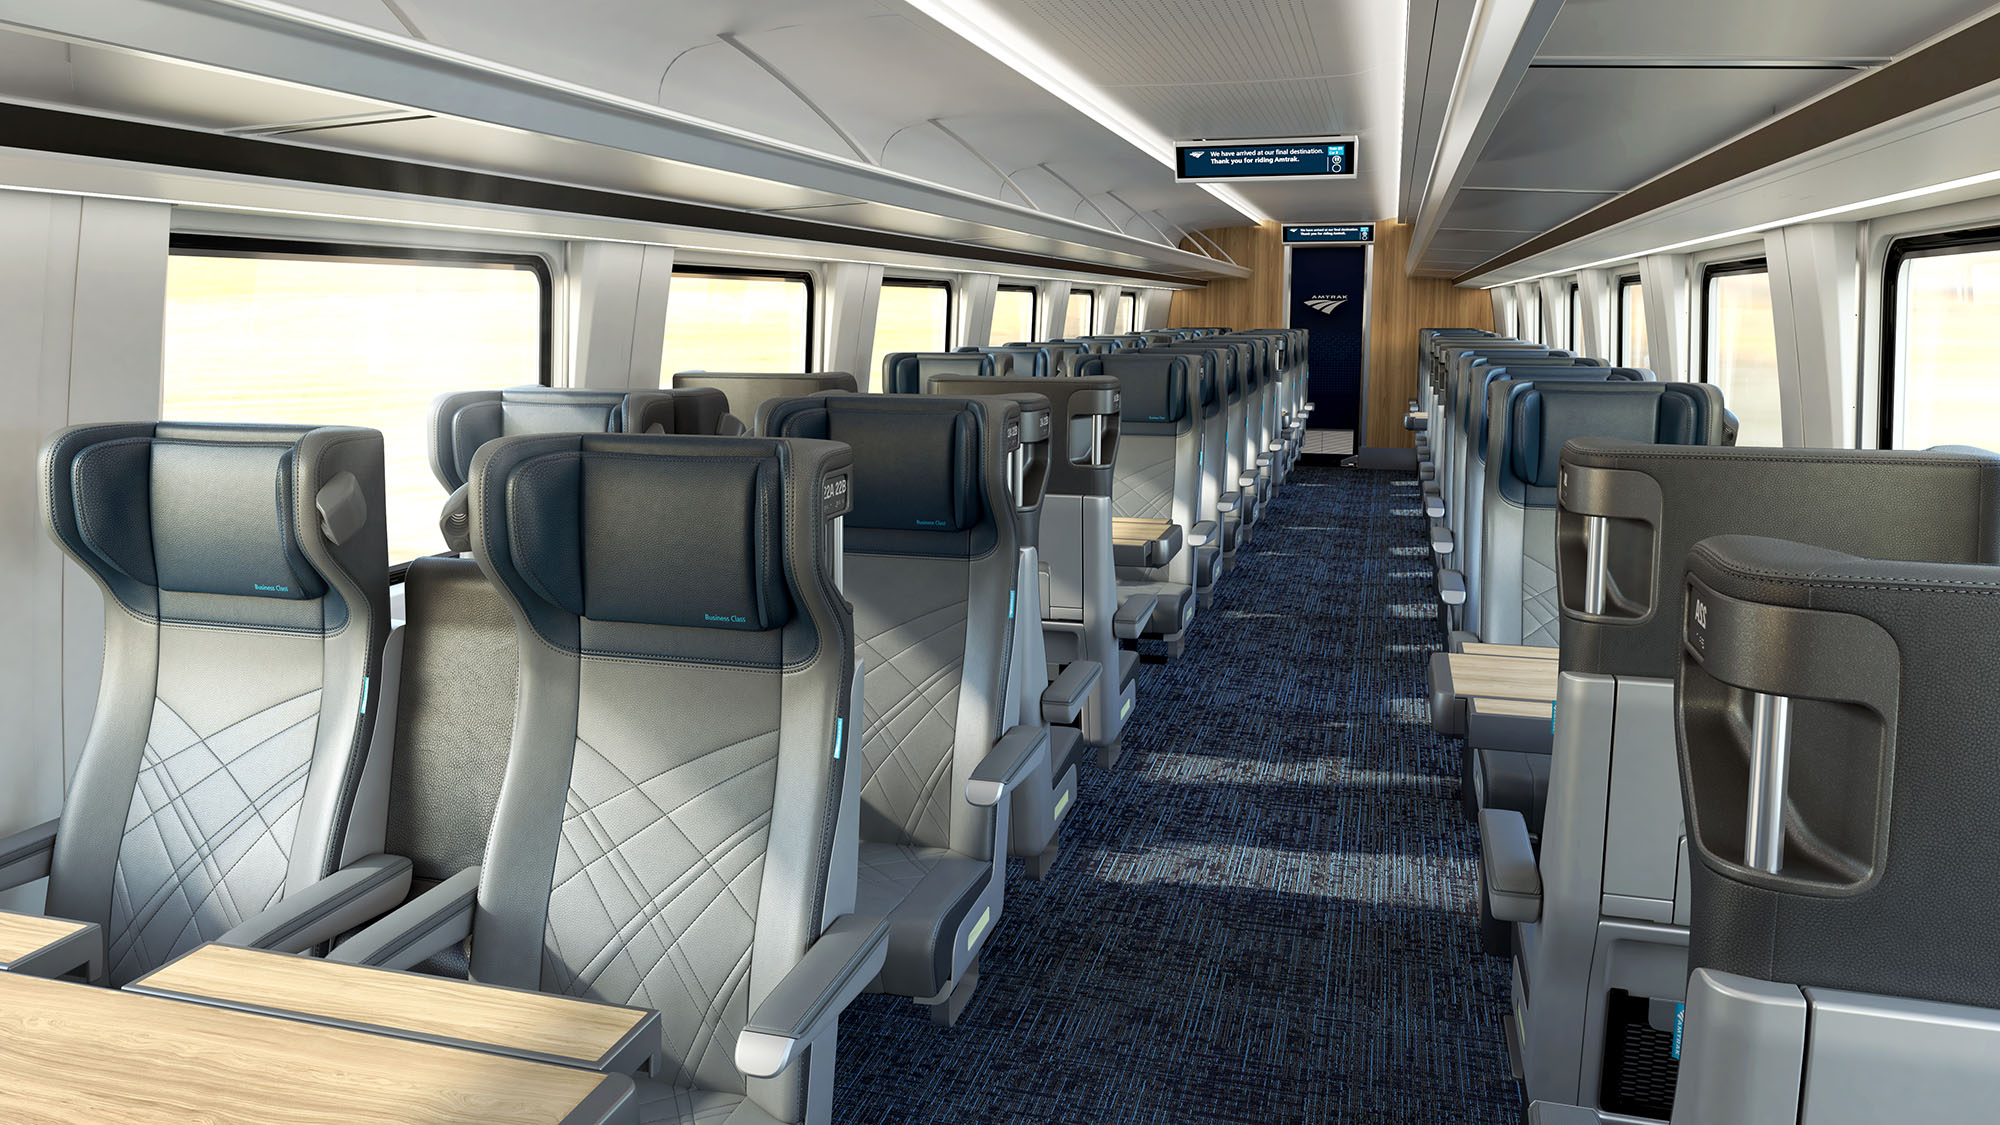 Representaciones Gráficas Conceptuales de los Trenes Interurbanos de Amtrak